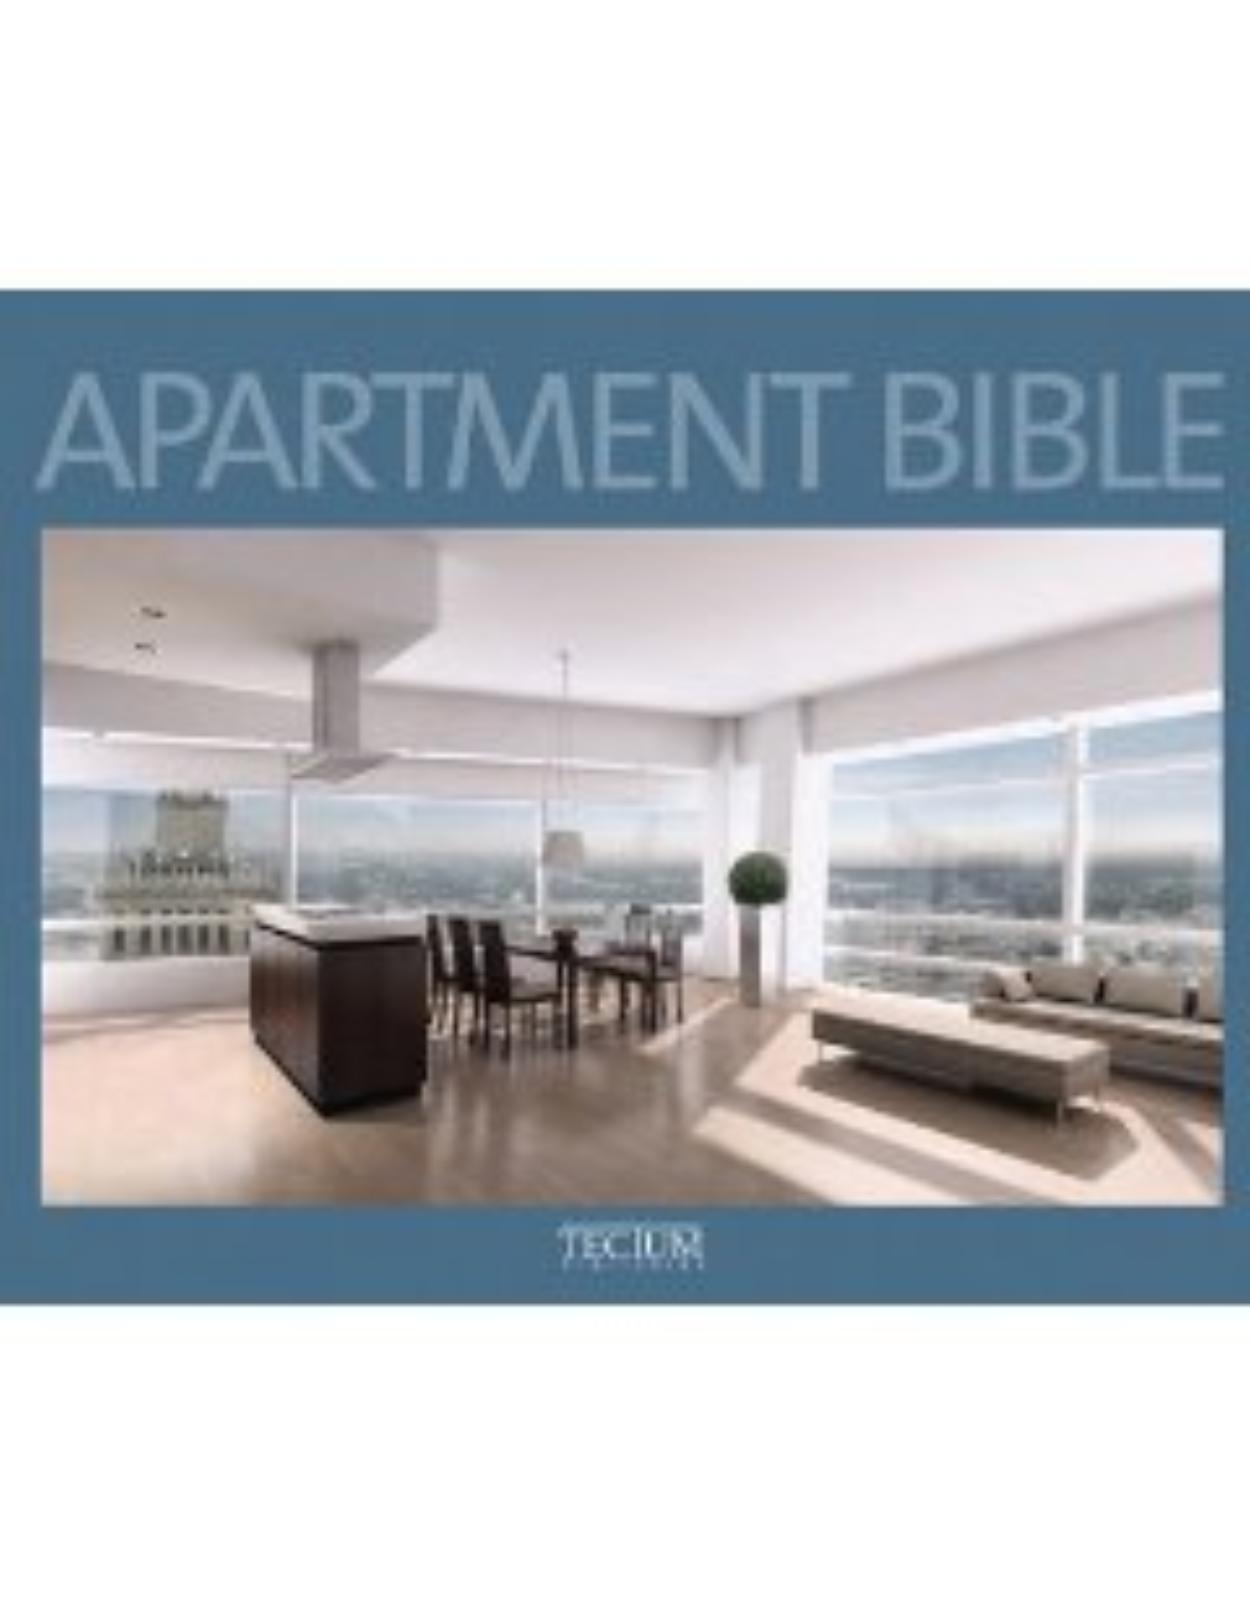 Apartment Bible